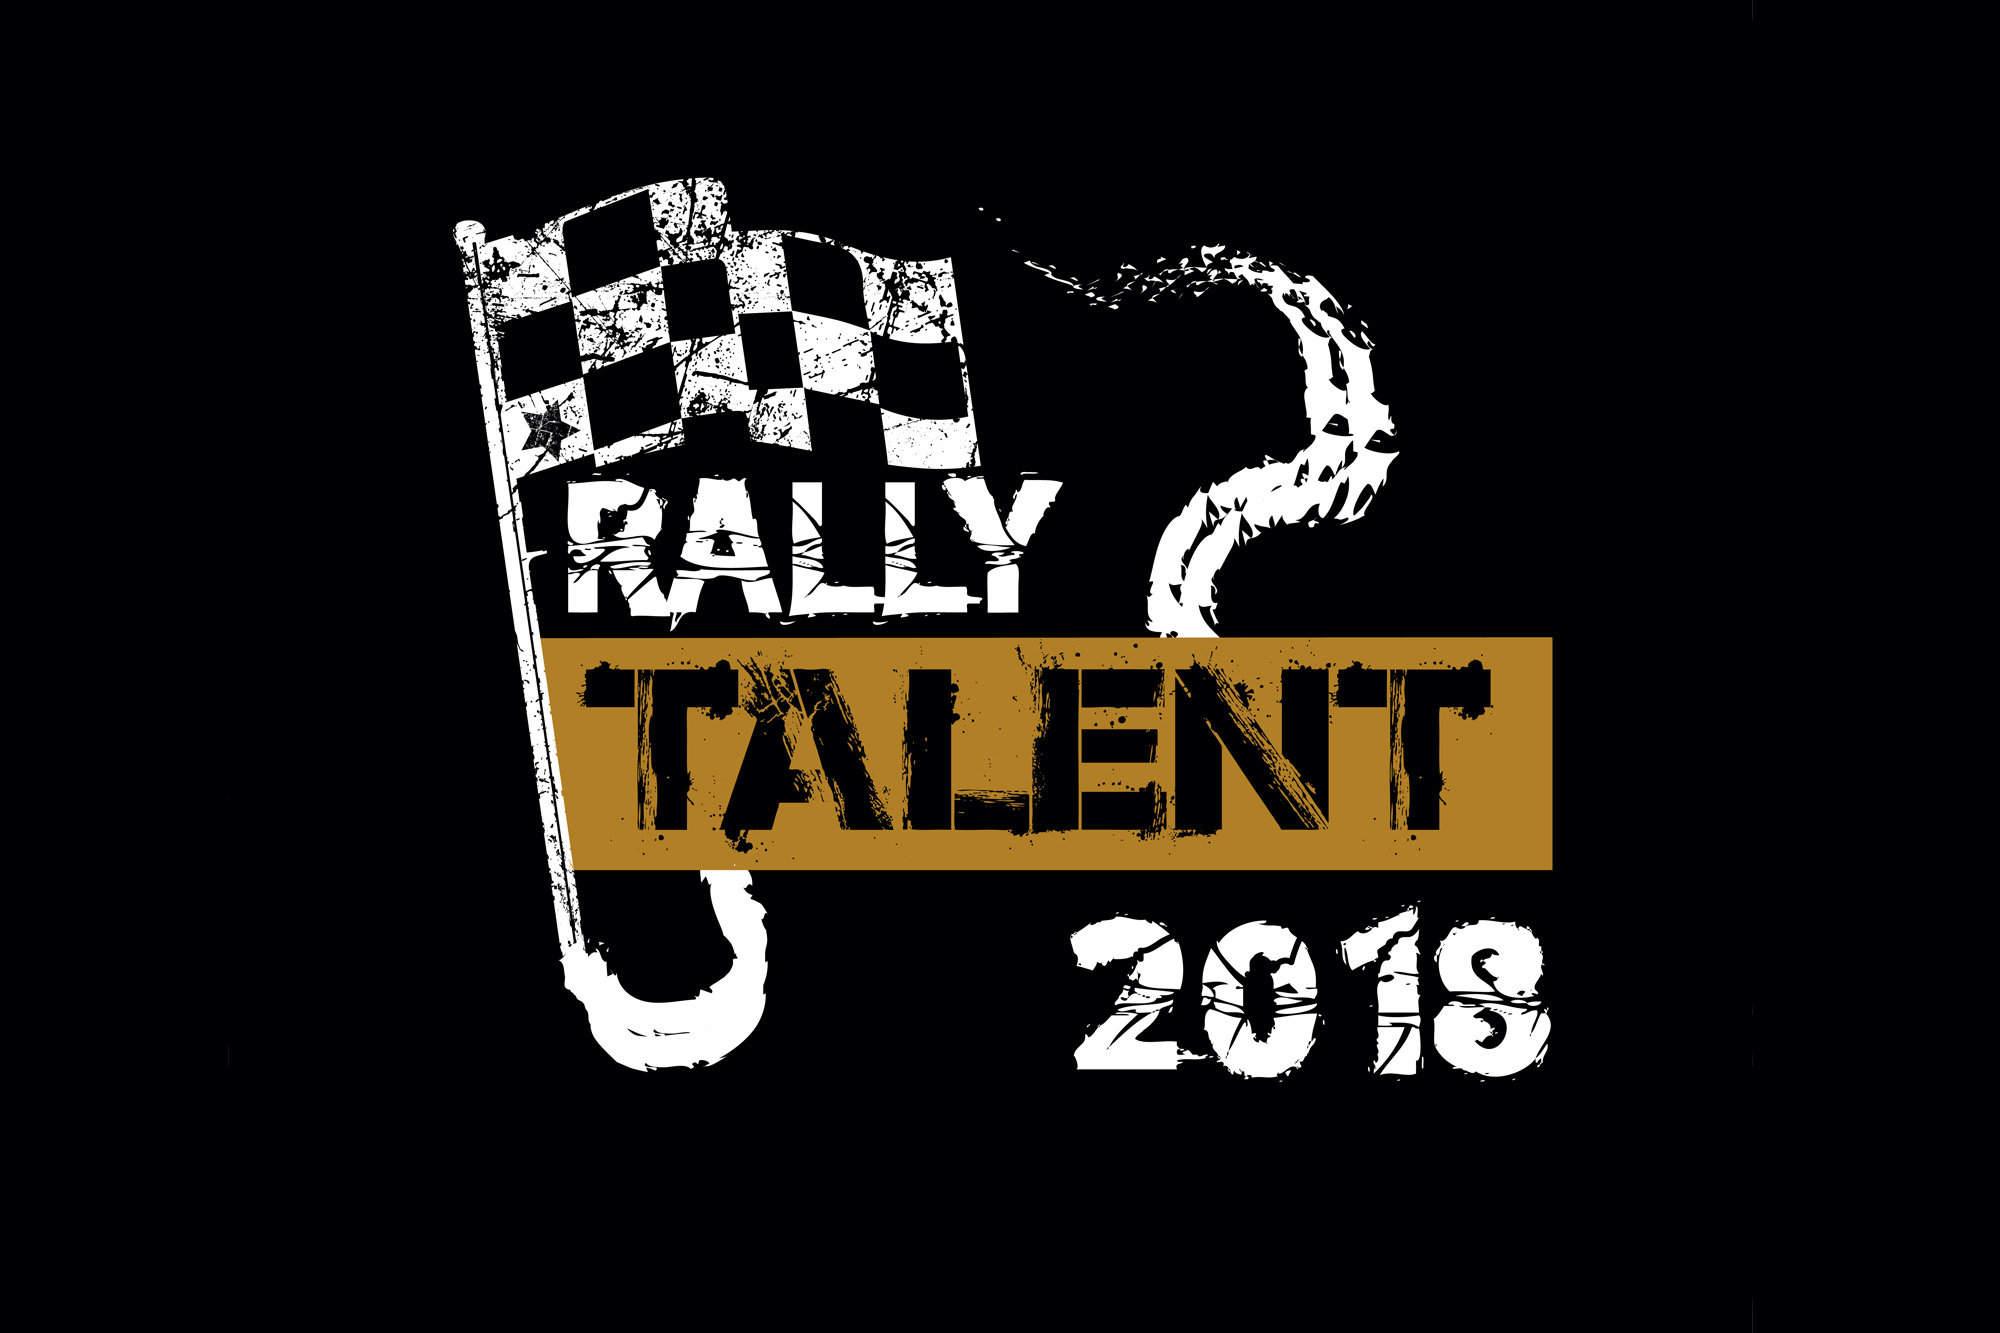 Autoklub Peugeot Rally Talent